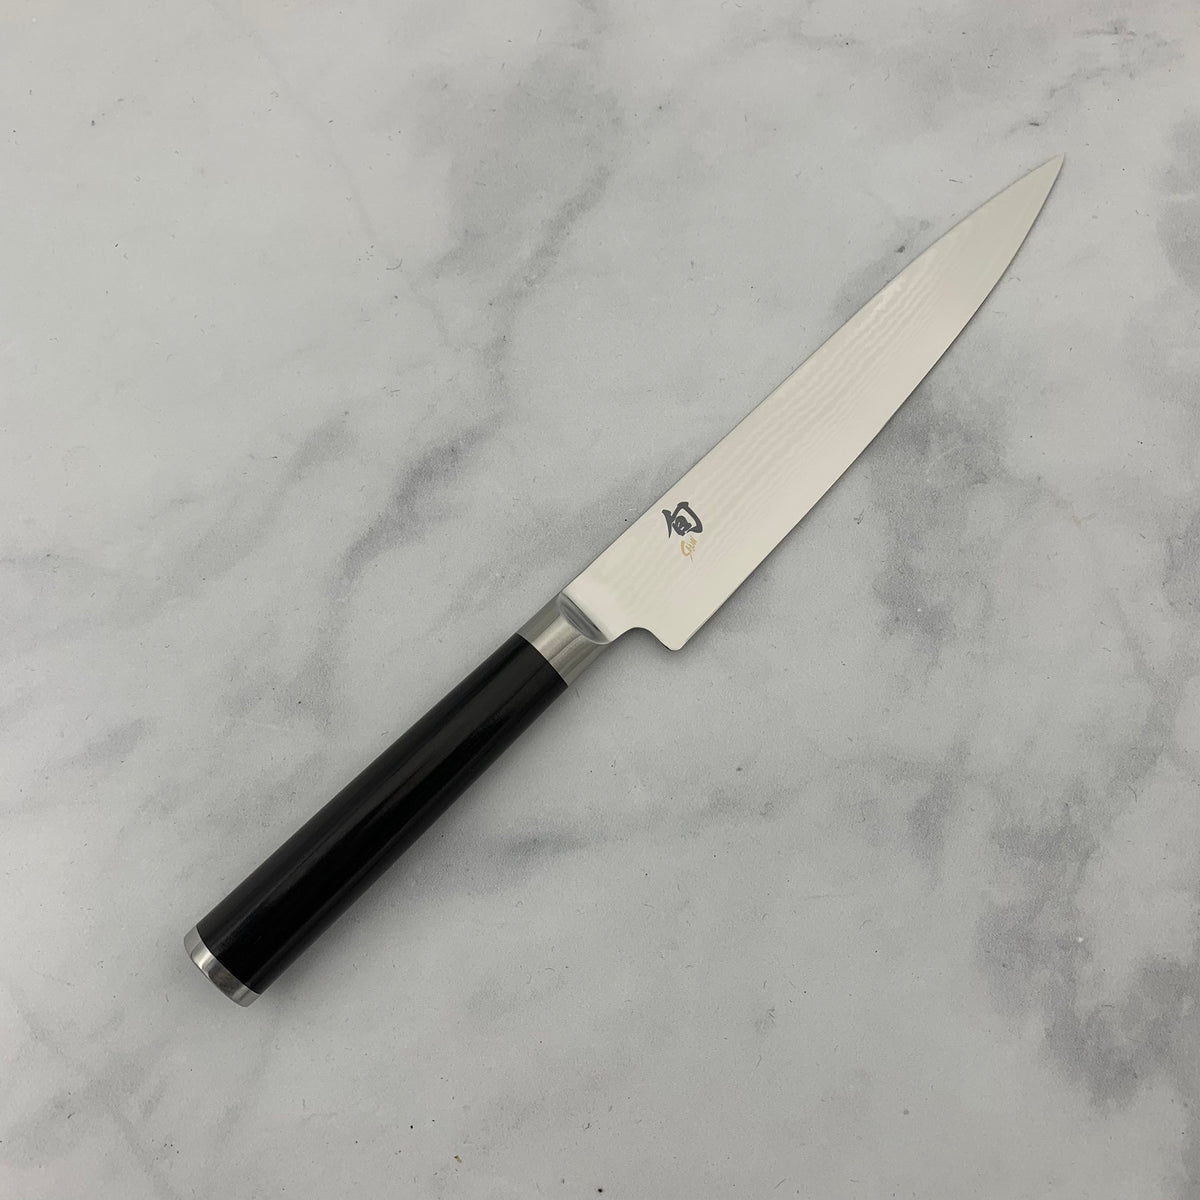 Kai 6710P 105mm Paring Knife - Black Wasabi